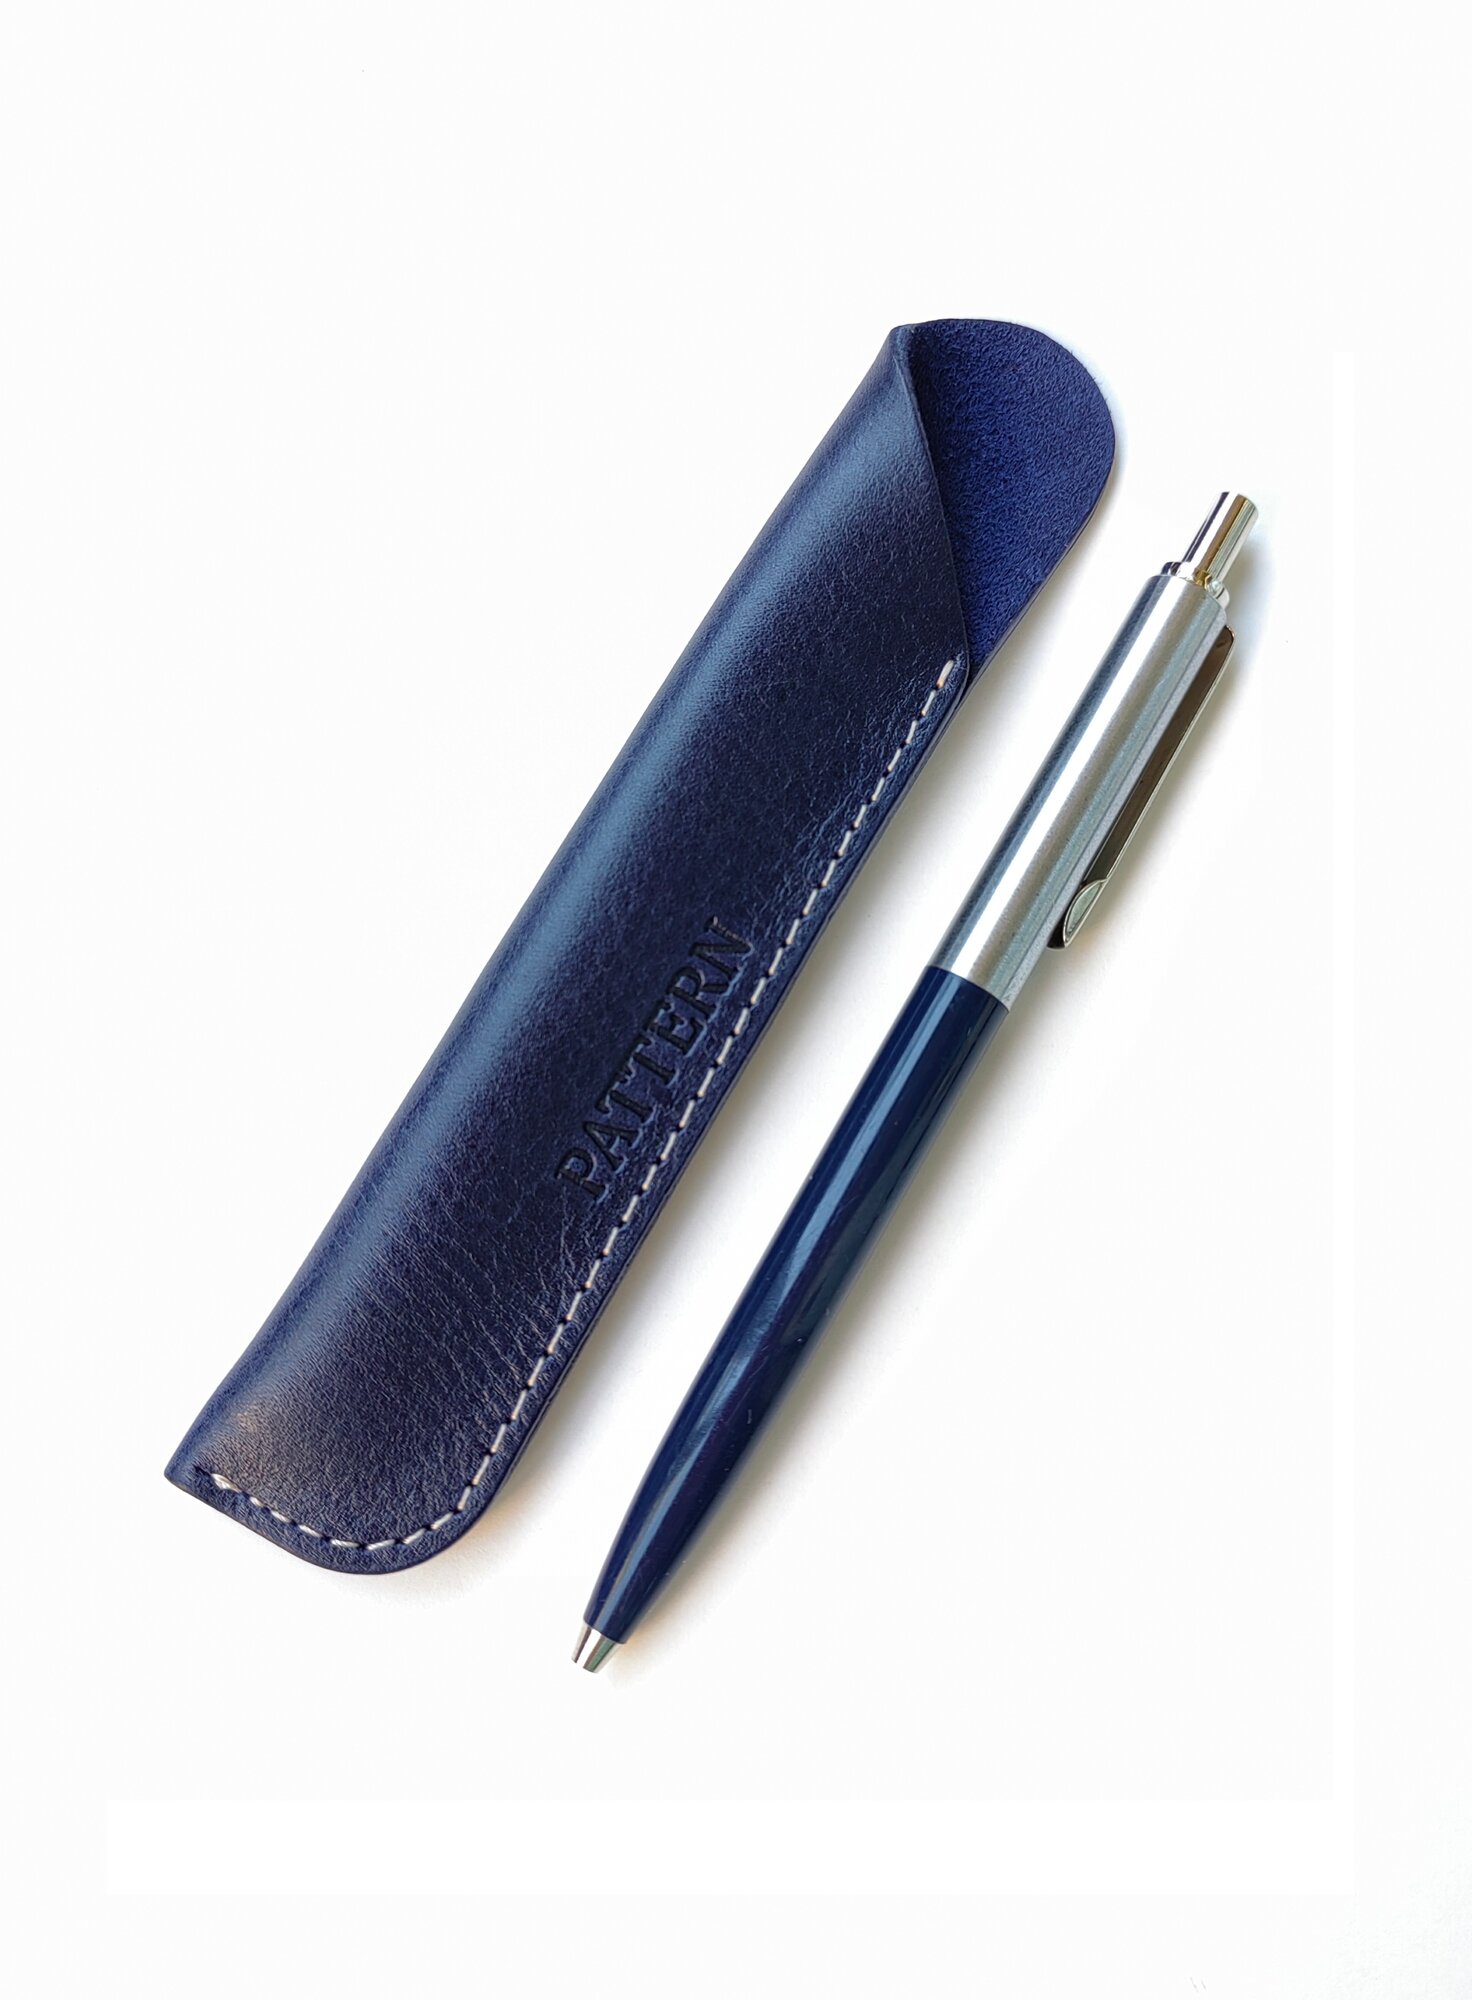 Футляр для ручки. Чехол для ручек натуральная кожа, цвет синий, арт. 1309